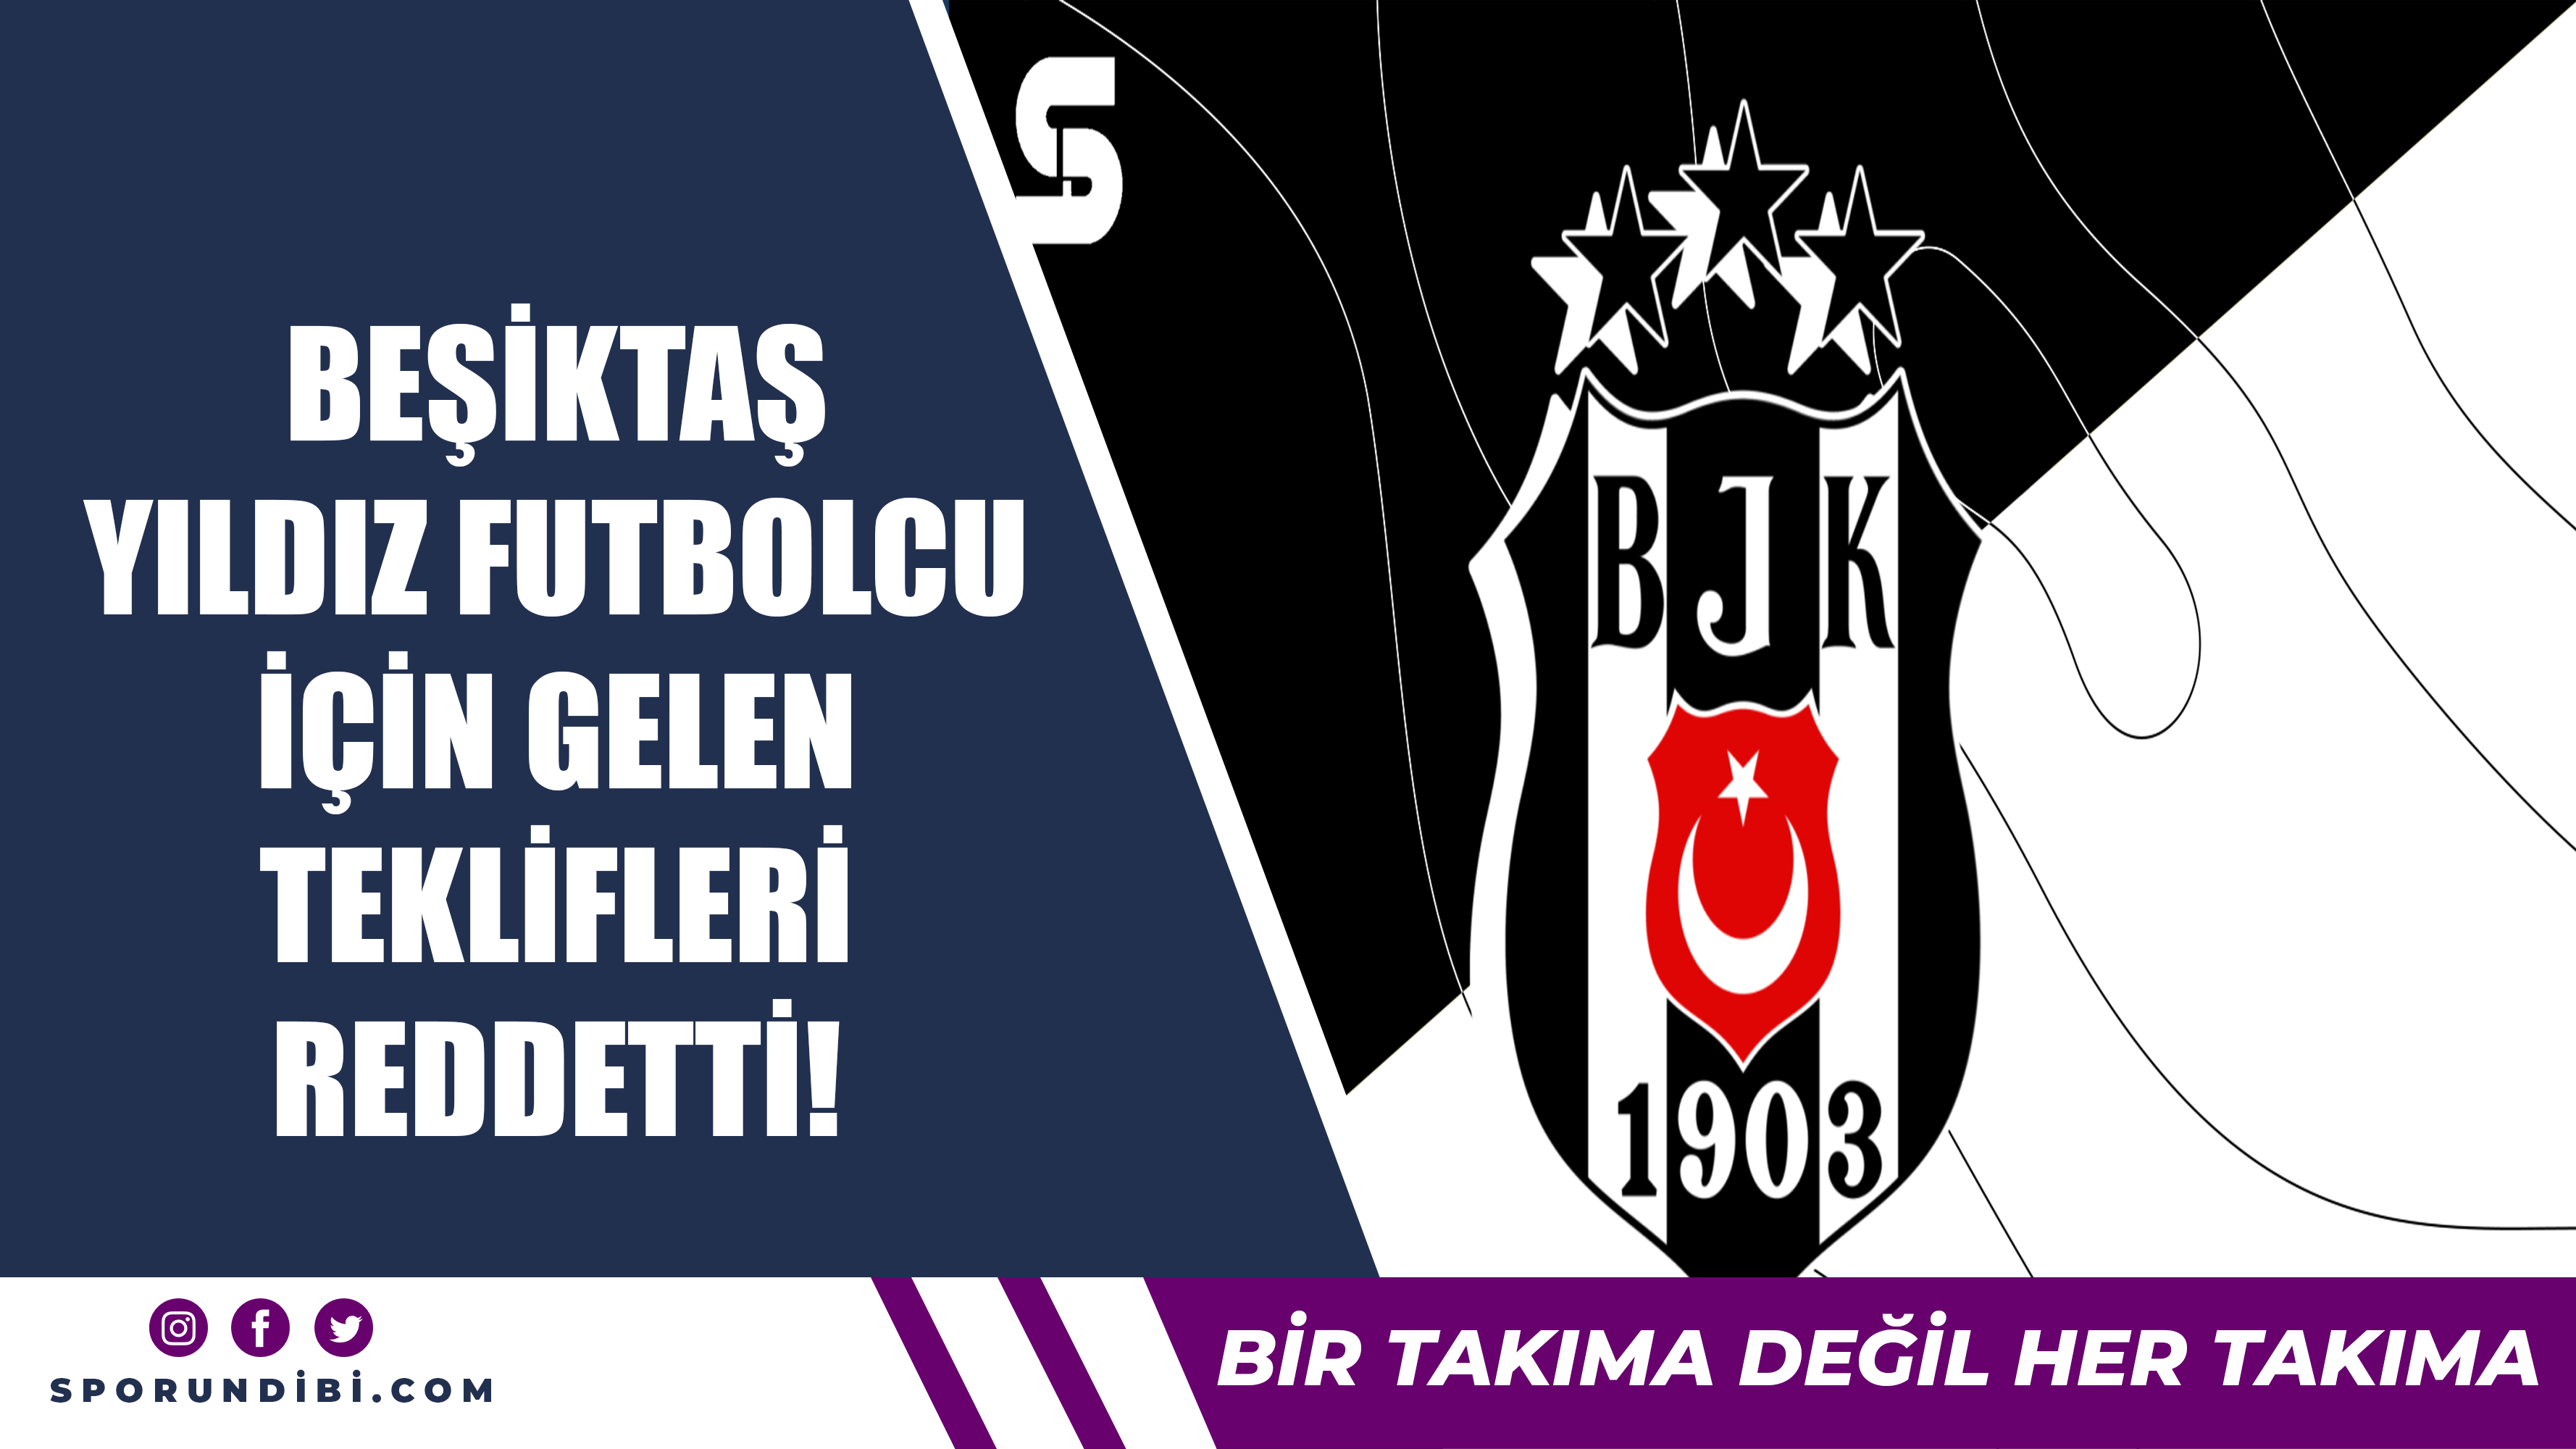 Beşiktaş yıldız futbolcu için gelen teklifleri reddeti!